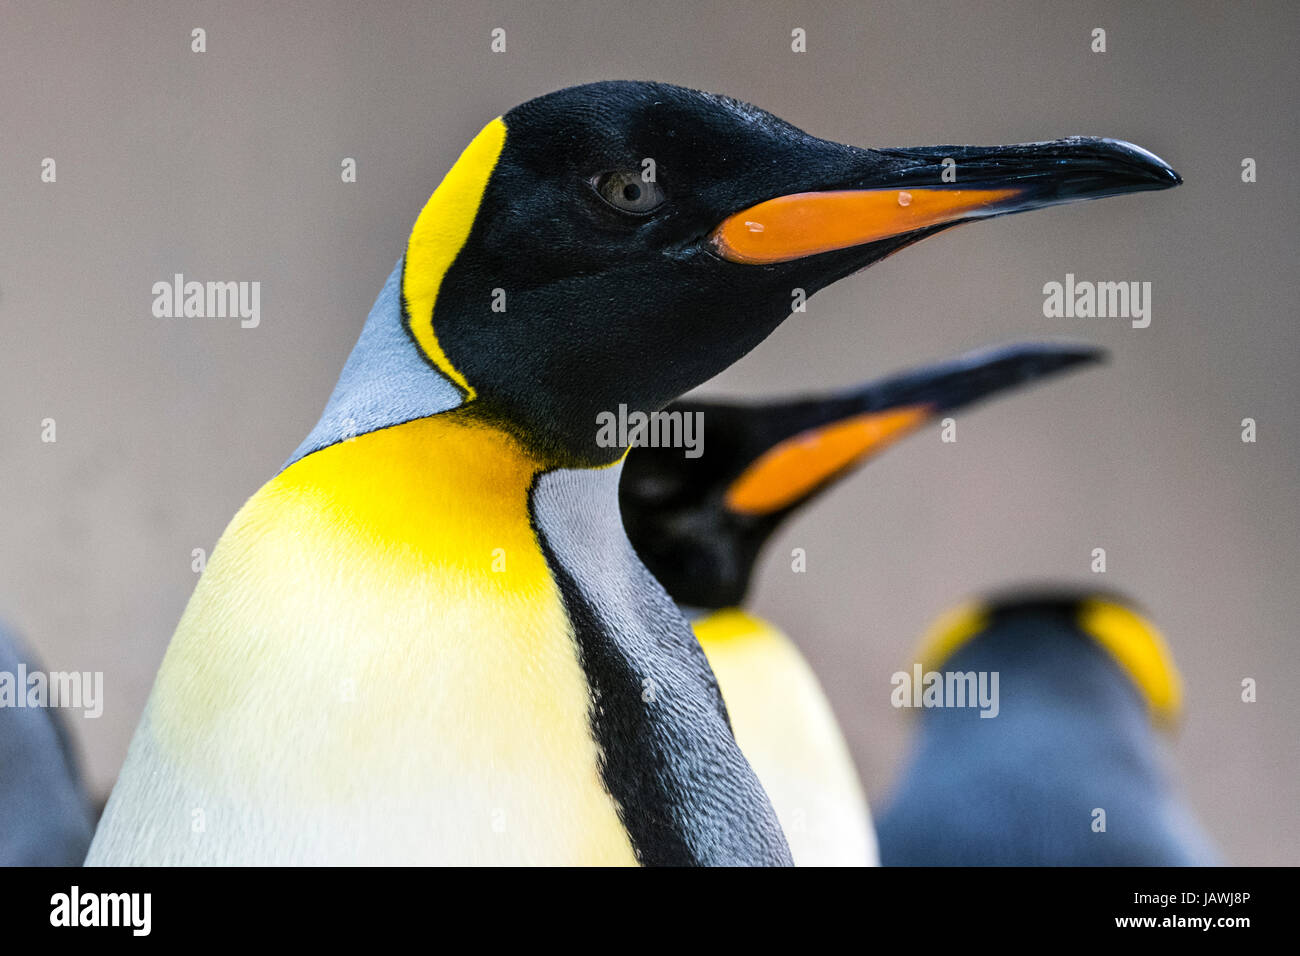 Colore giallo-arancio petto piumaggio di piume e marcature di mandibola su un pinguino reale. Foto Stock